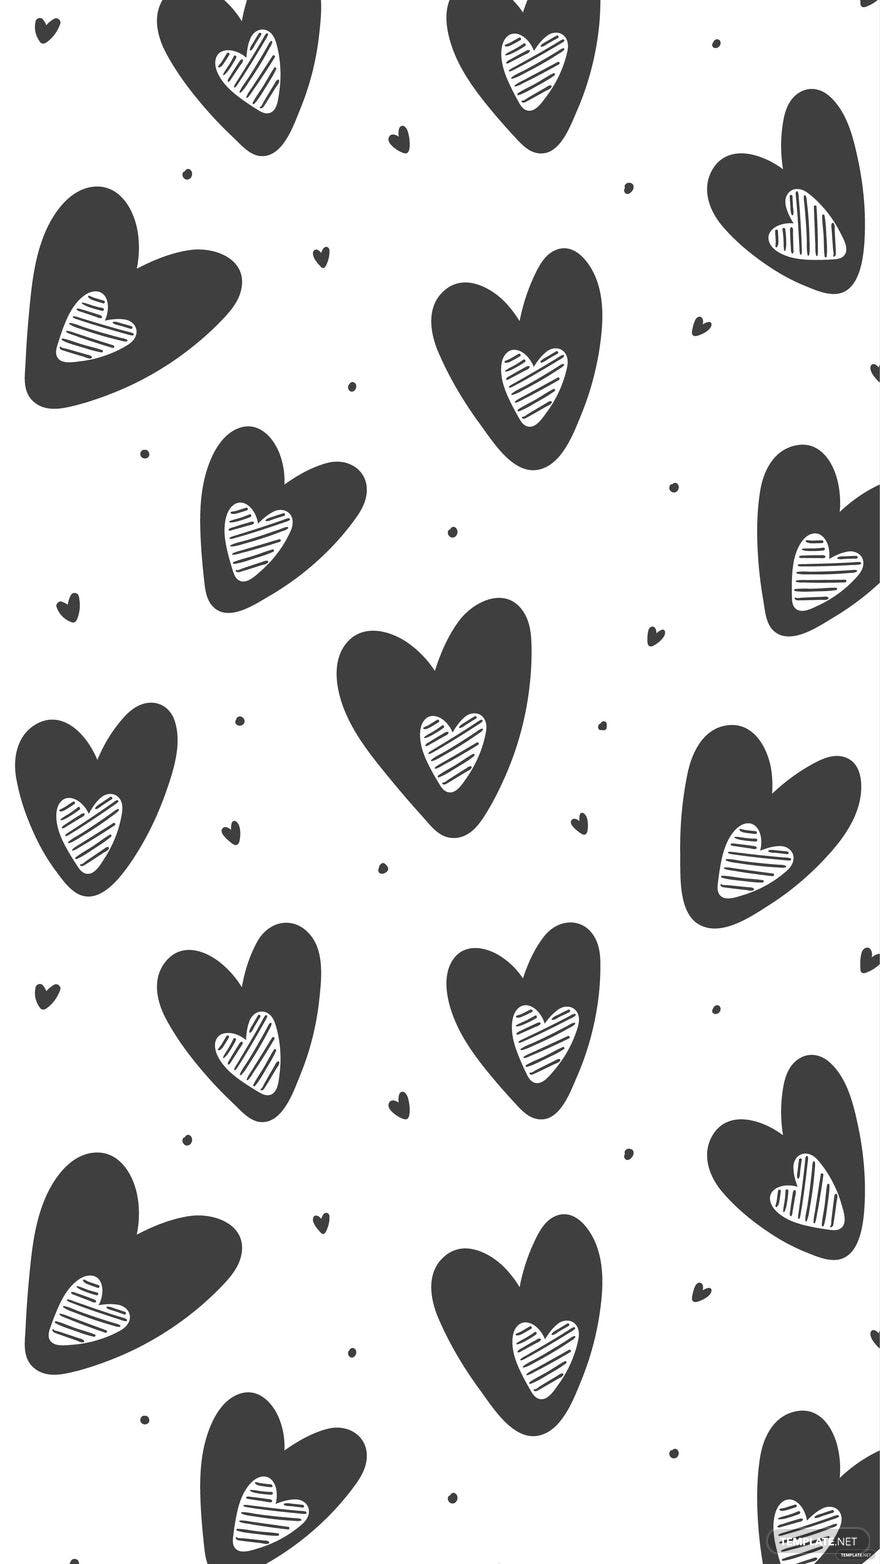 Free White And Black Heart Background, Illustrator, JPG, SVG